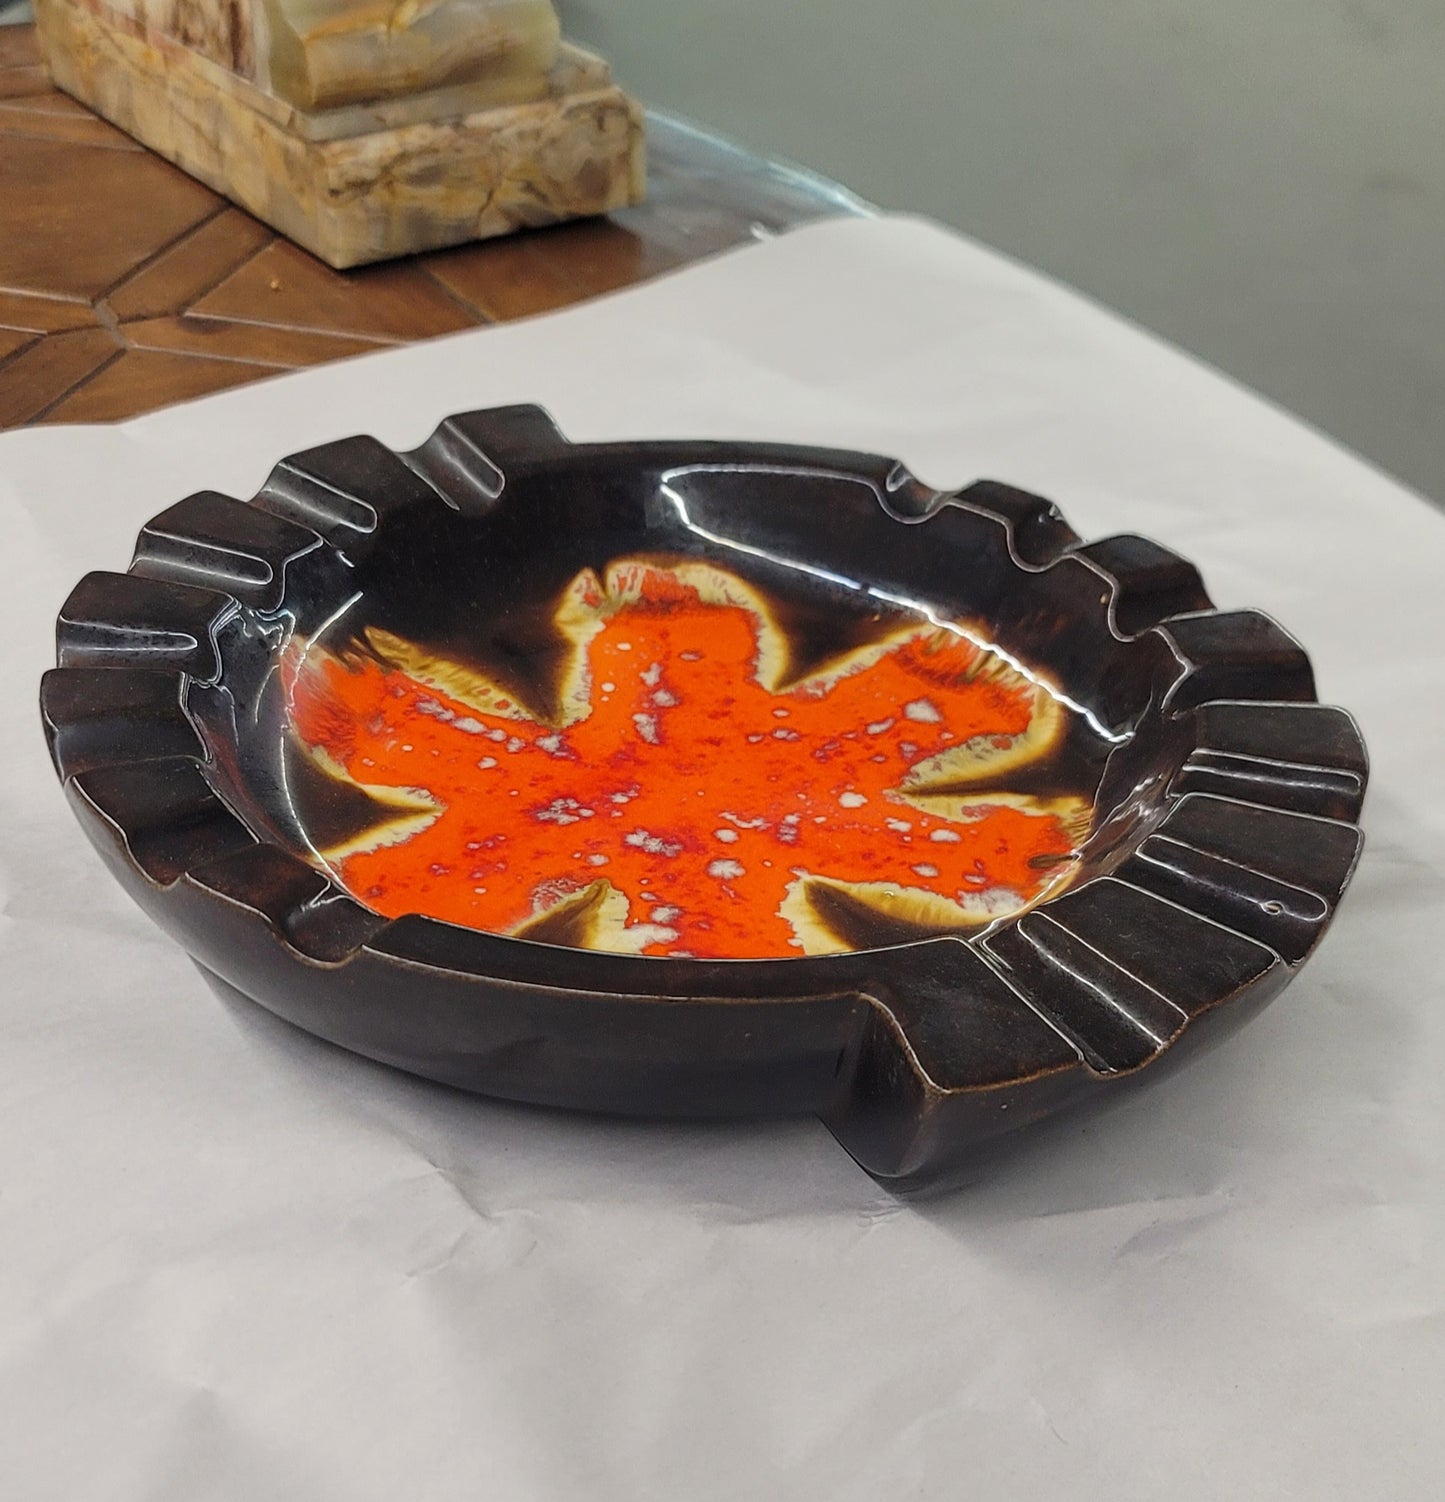 MCM hand-painted glazed vintage black and orange ashtray